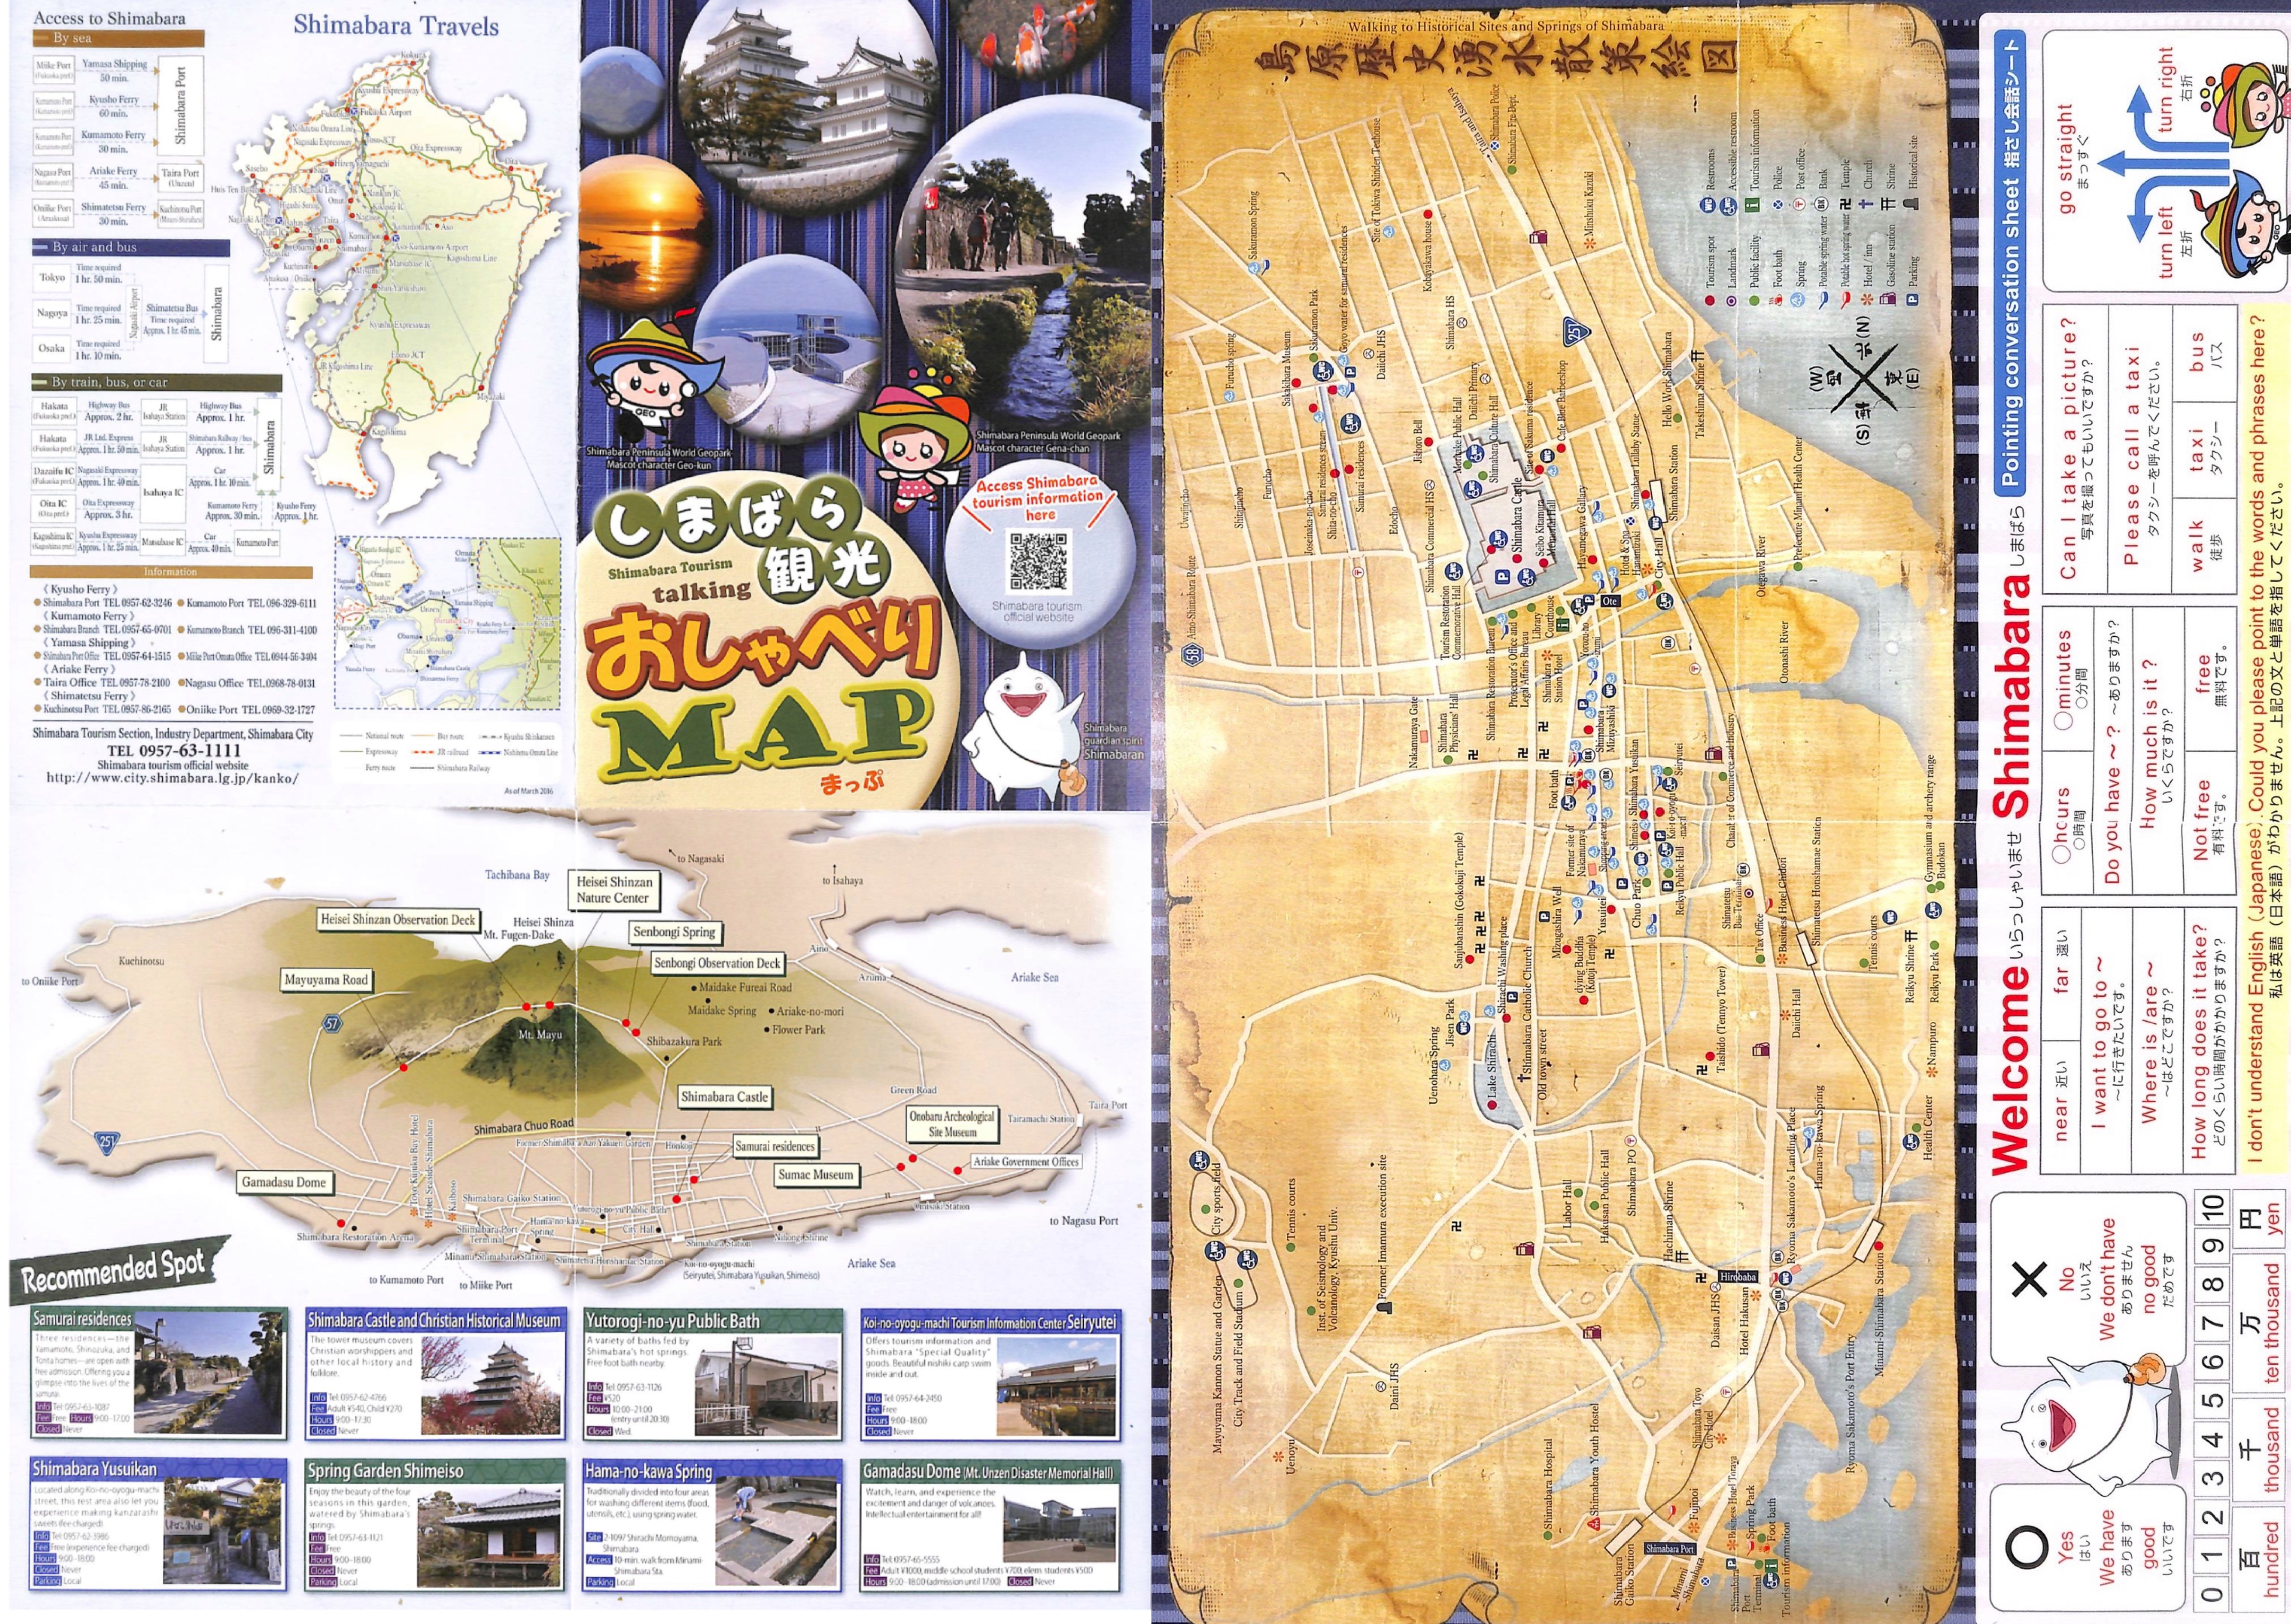 Shimabara Tourism Talking Map